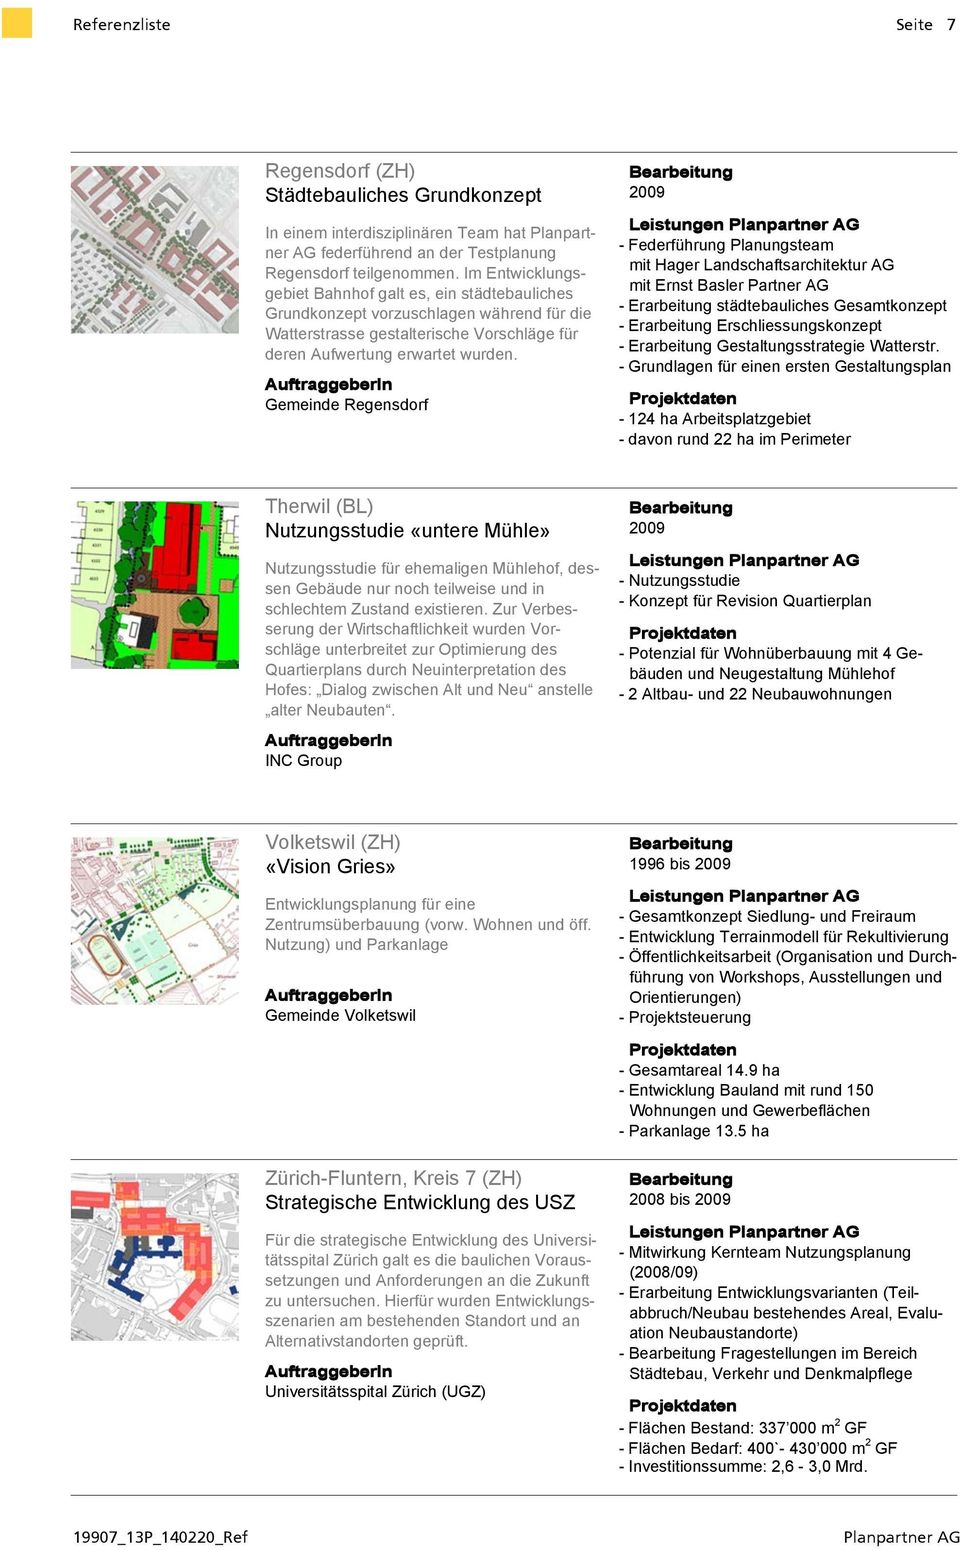 Gemeinde Regensdorf 2009 - Federführung Planungsteam mit Hager Landschaftsarchitektur AG mit Ernst Basler Partner AG - Erarbeitung städtebauliches Gesamtkonzept - Erarbeitung Erschliessungskonzept -